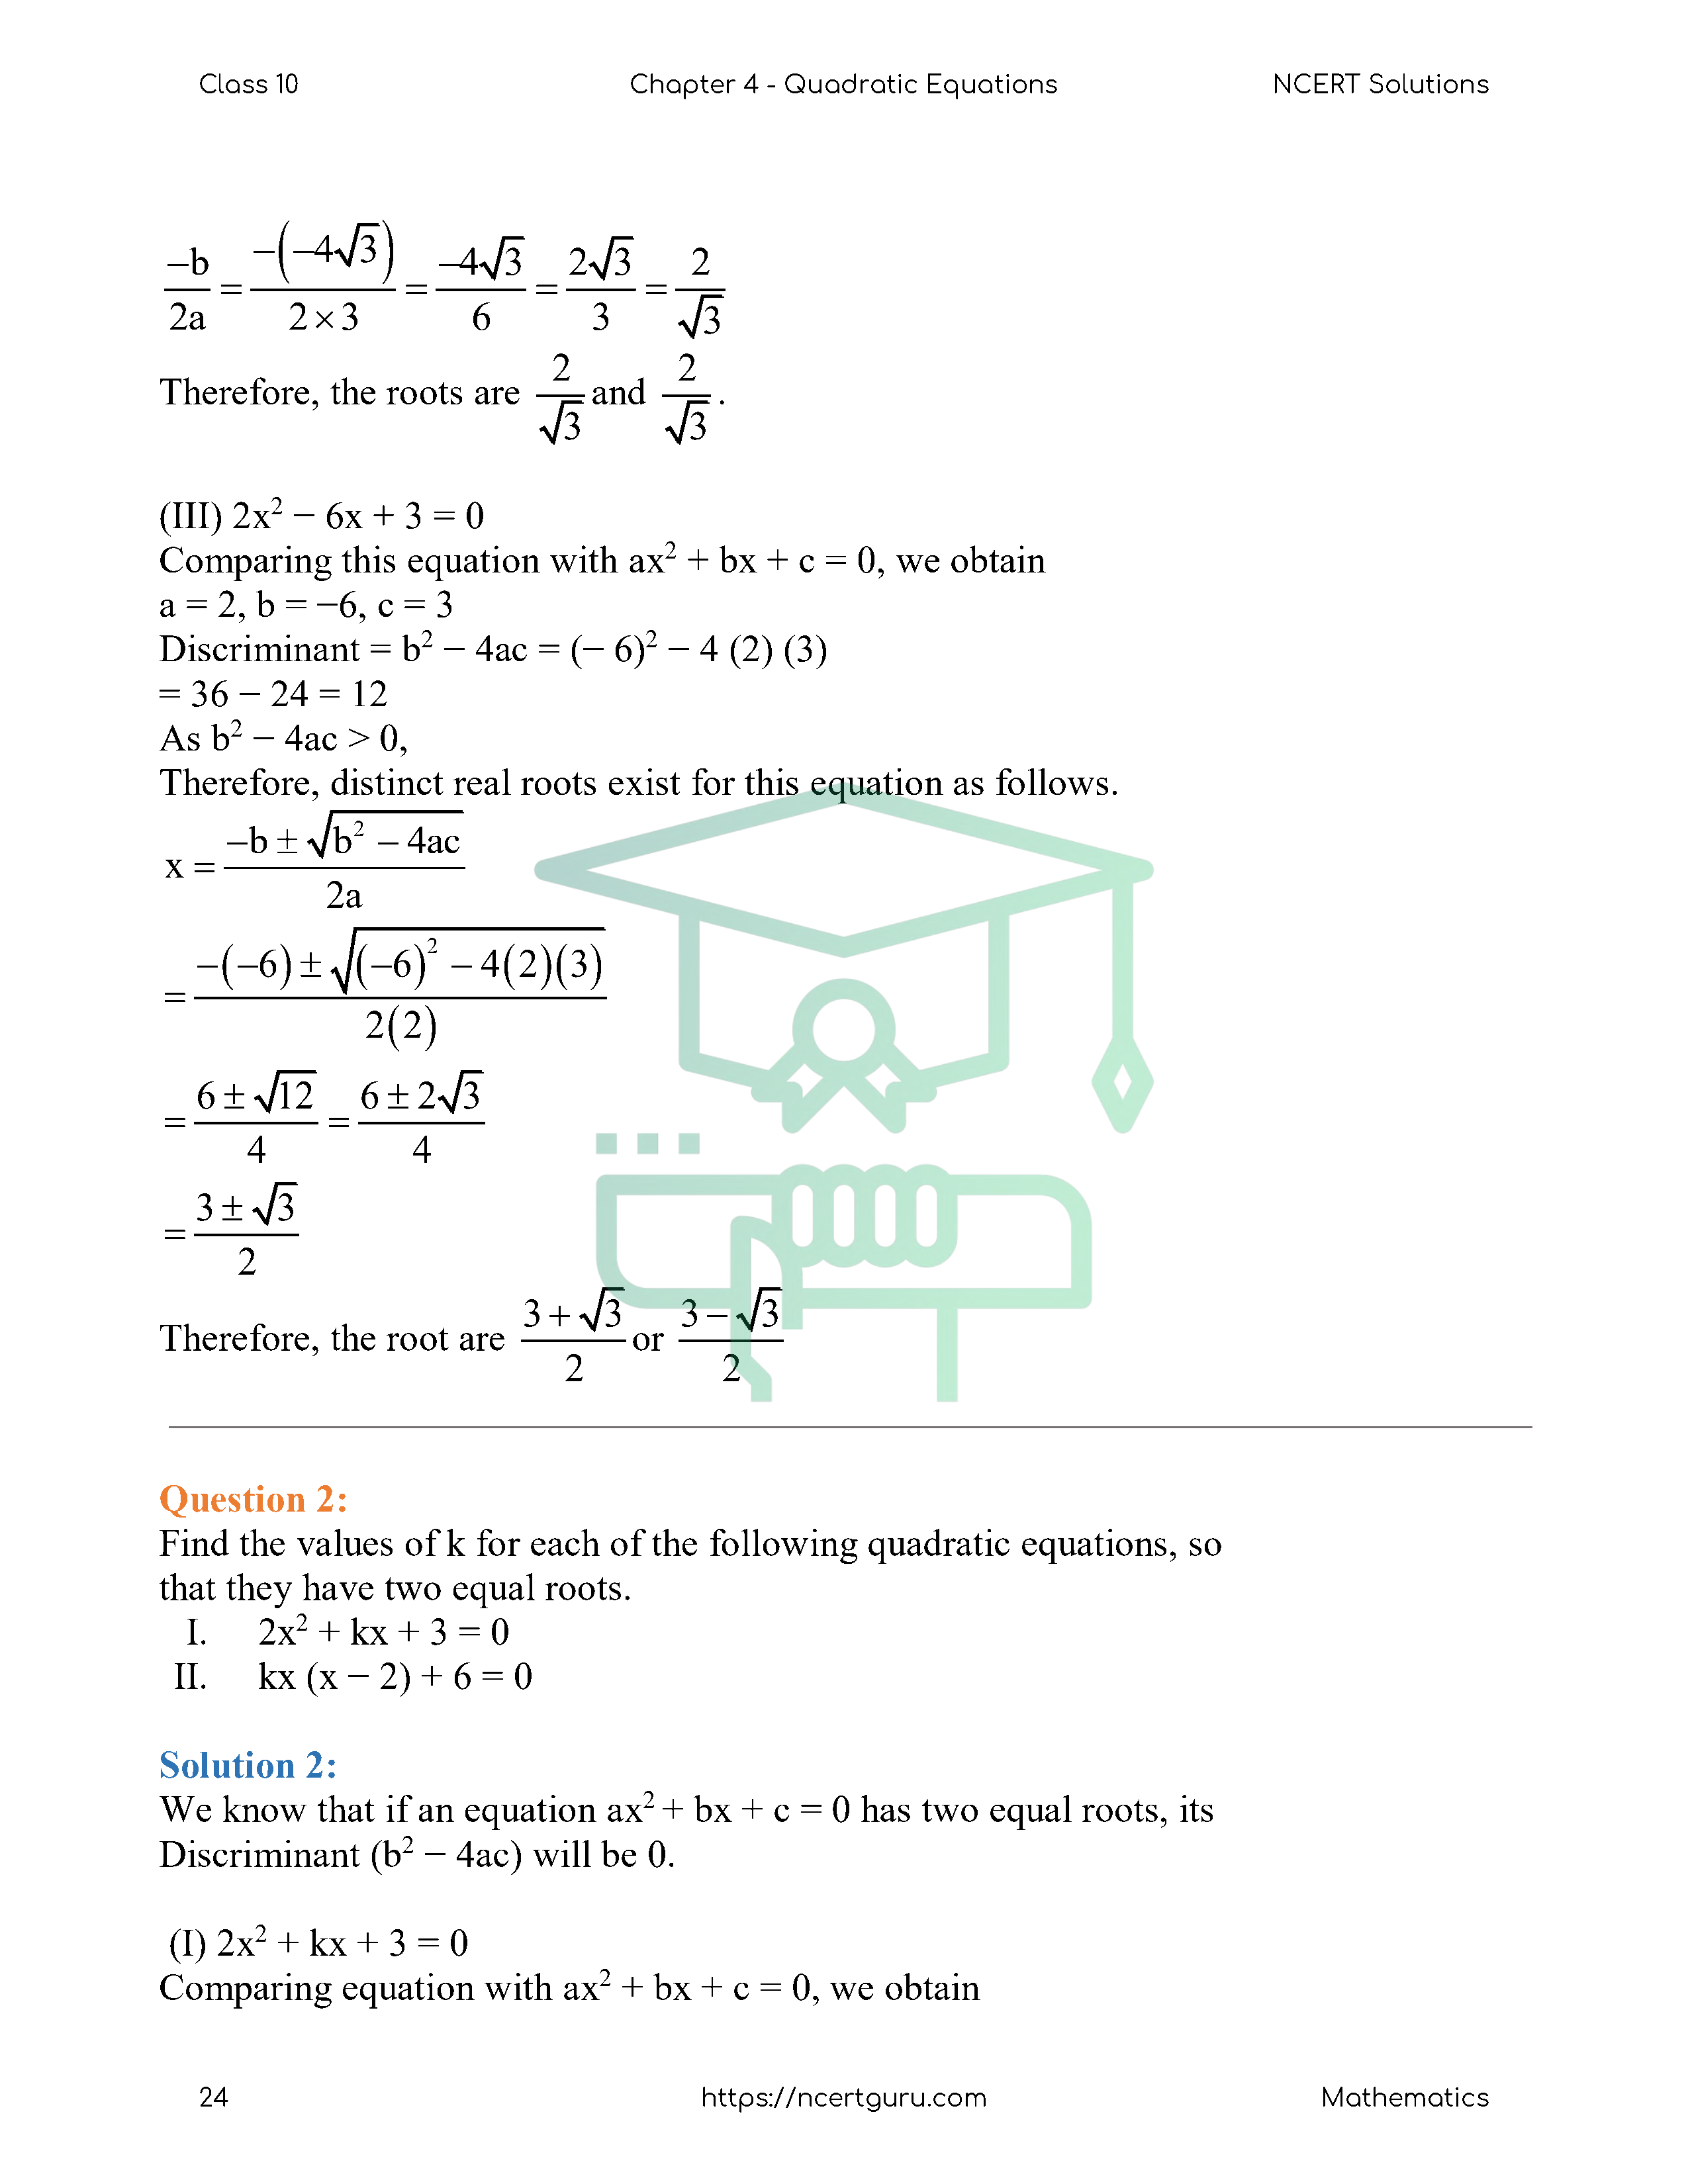 NCERT Solutions for Class 10 Maths Chapter 4